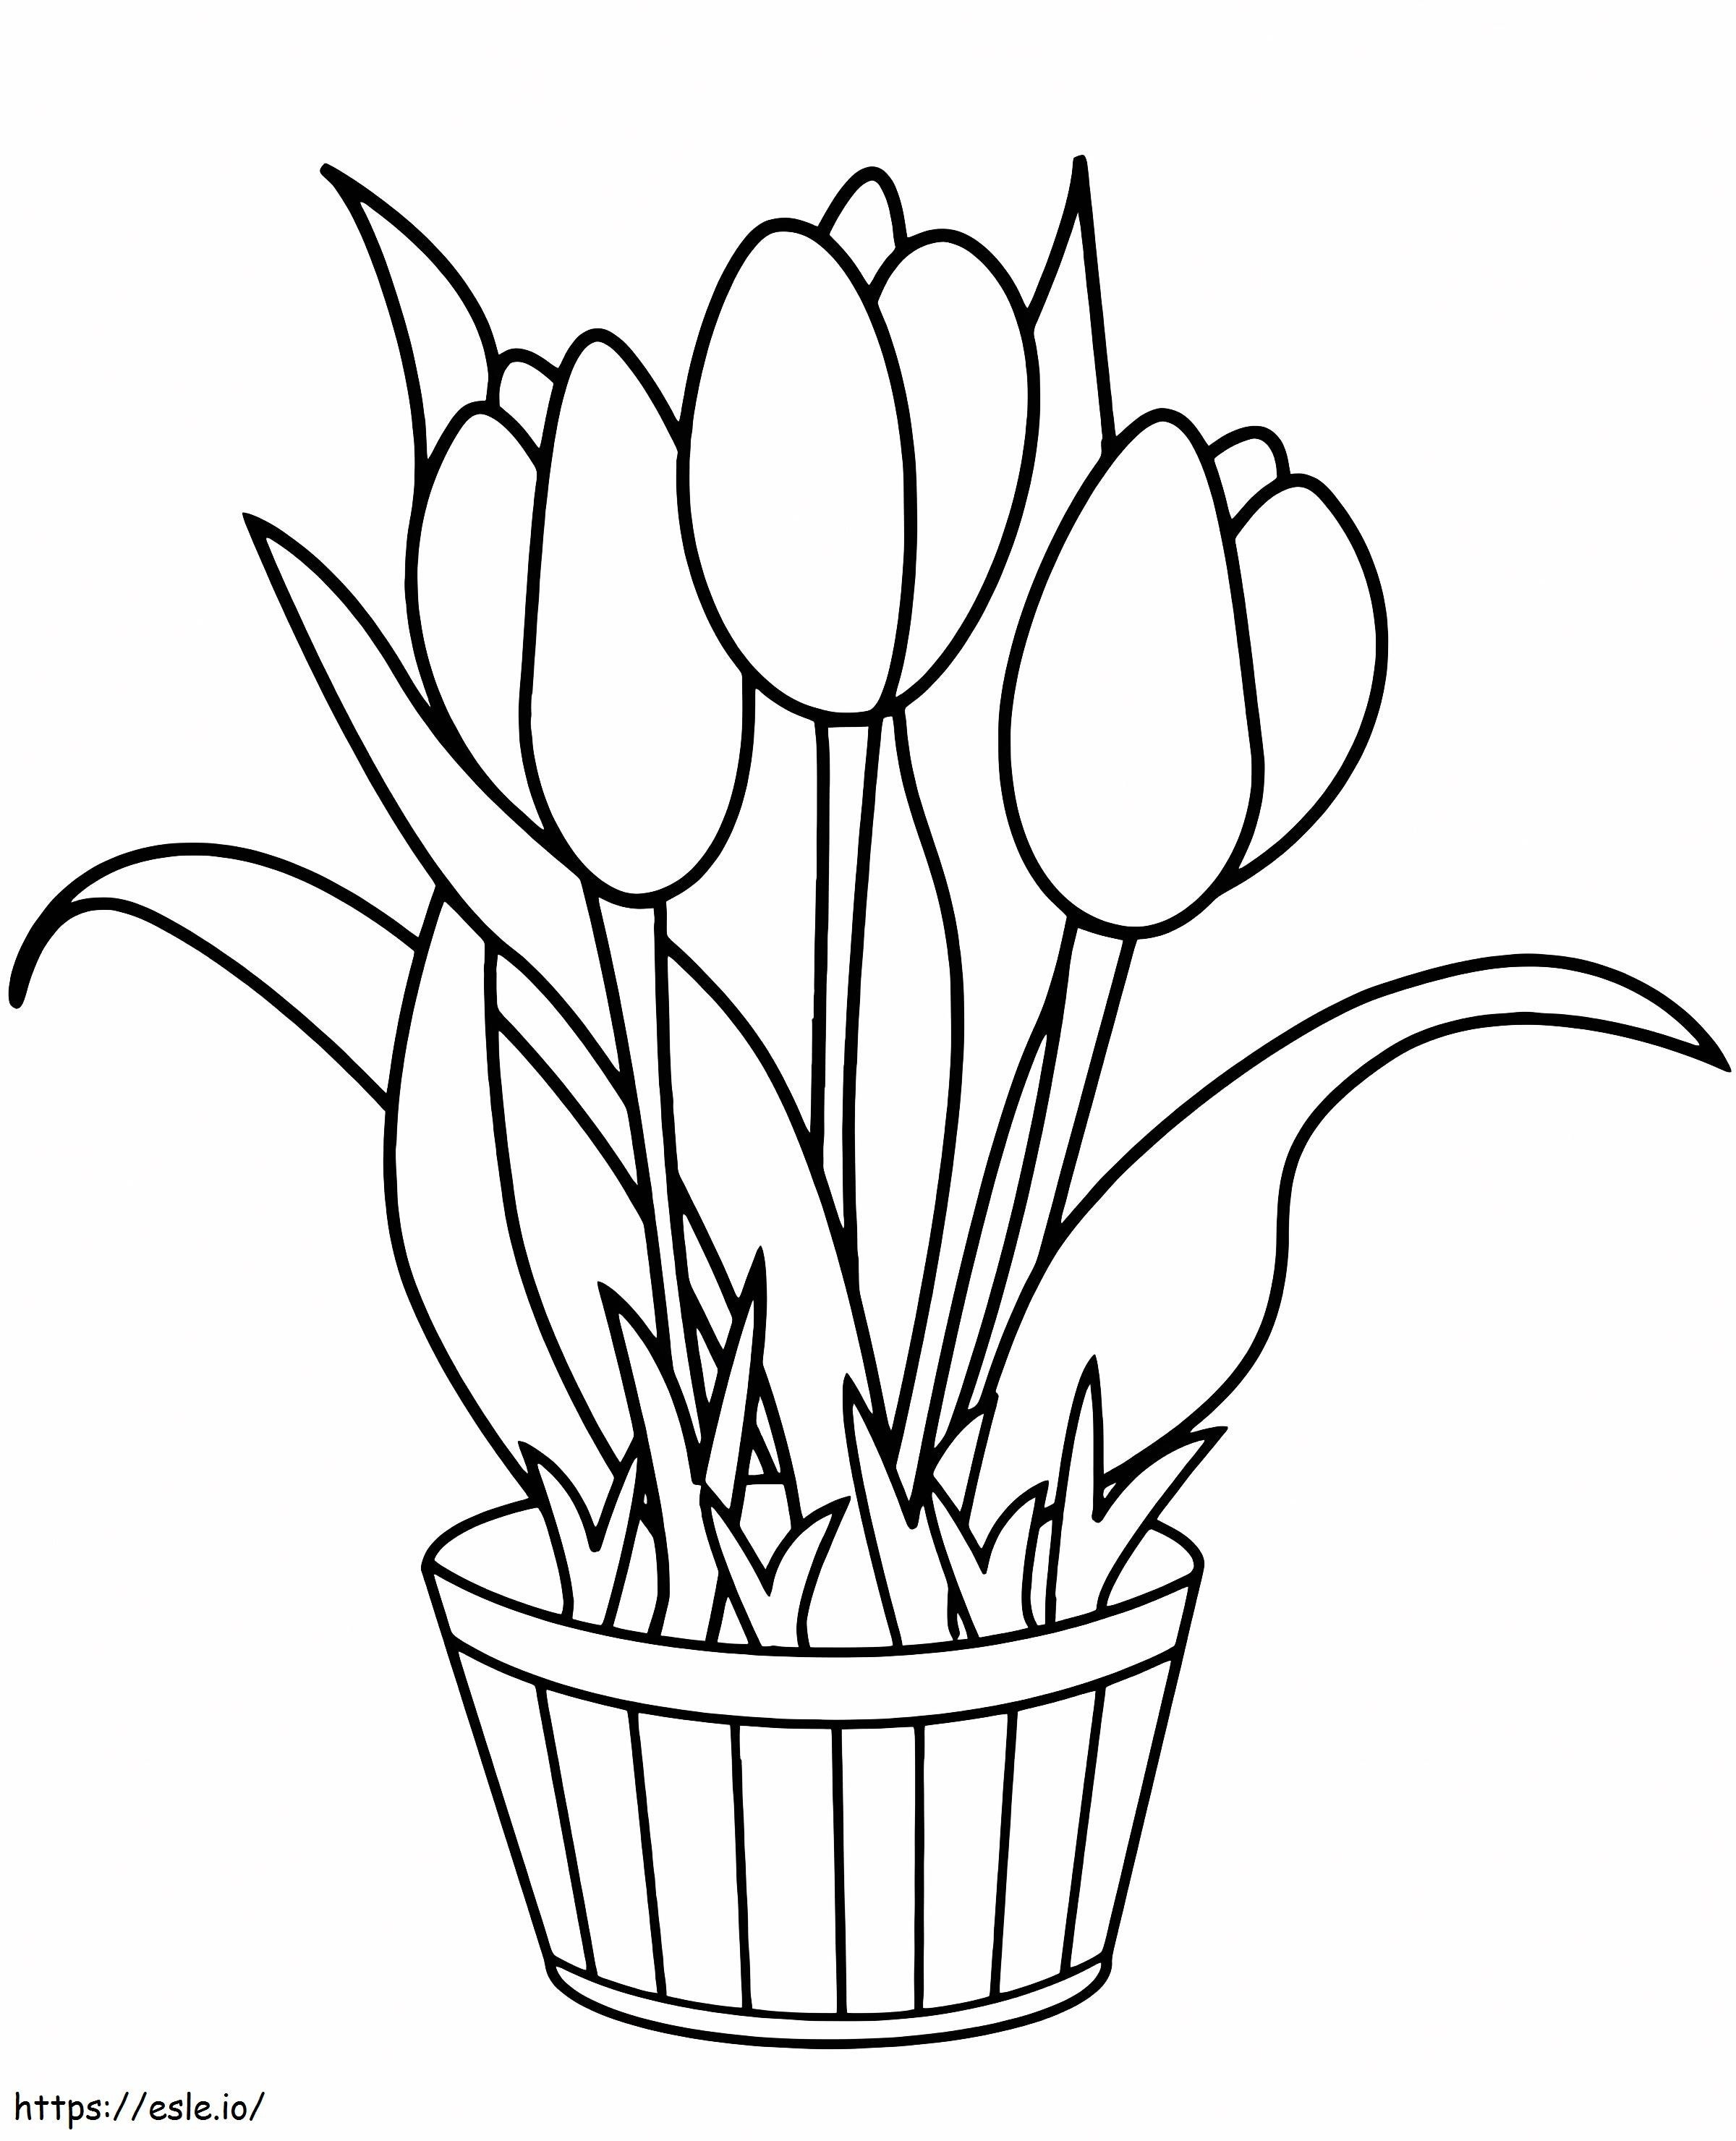 Vaso Di Fiori Con I Tulipani da colorare